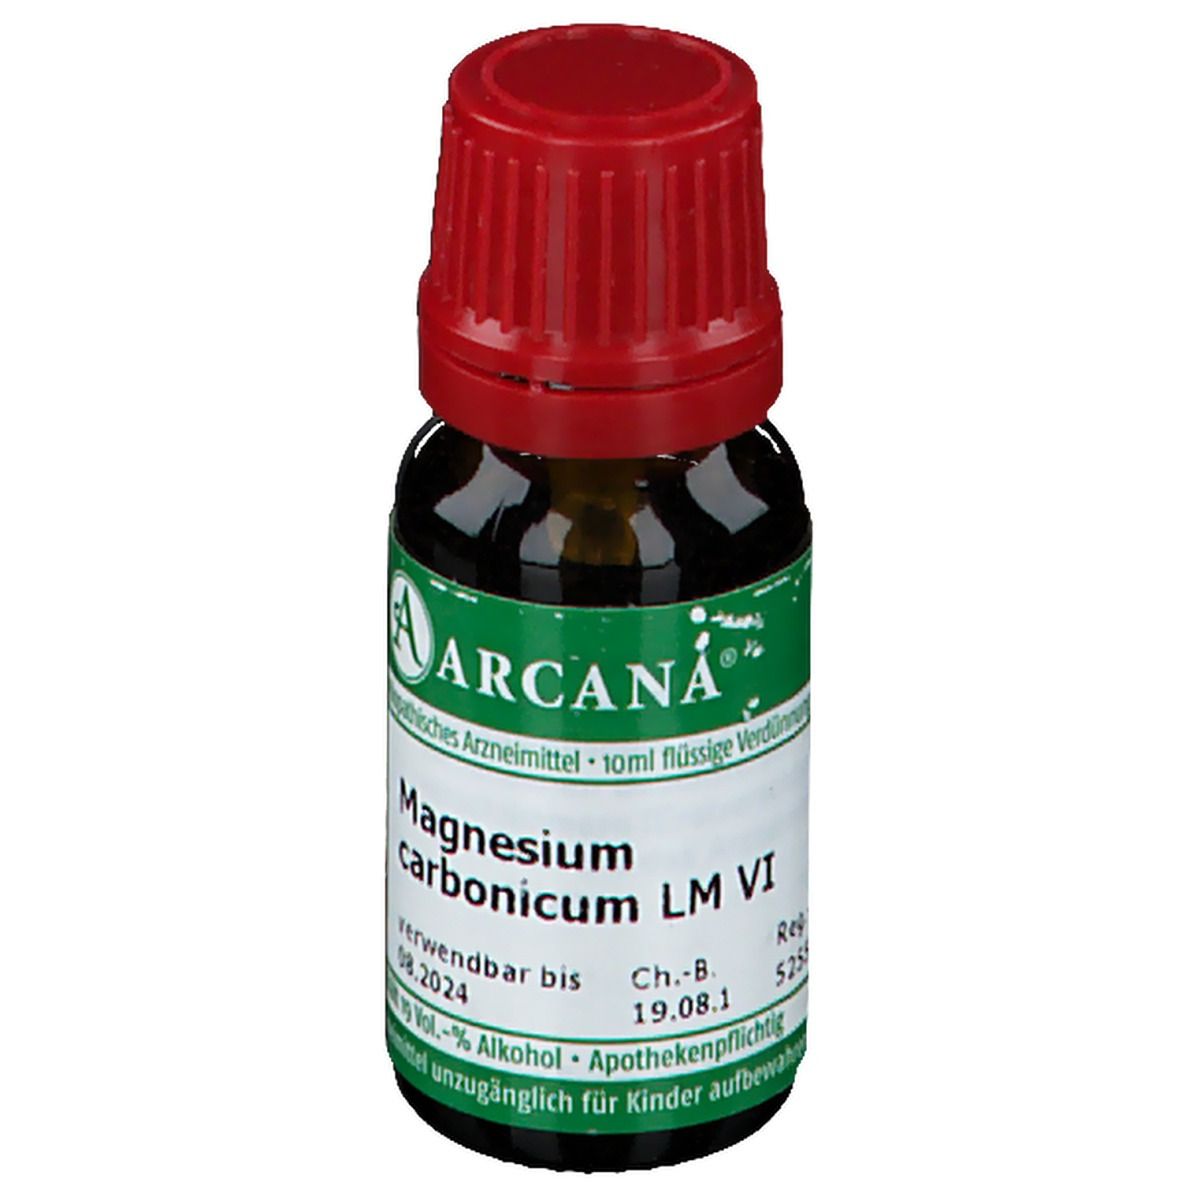 Arcana® Magnesium Carbonicum LM VI